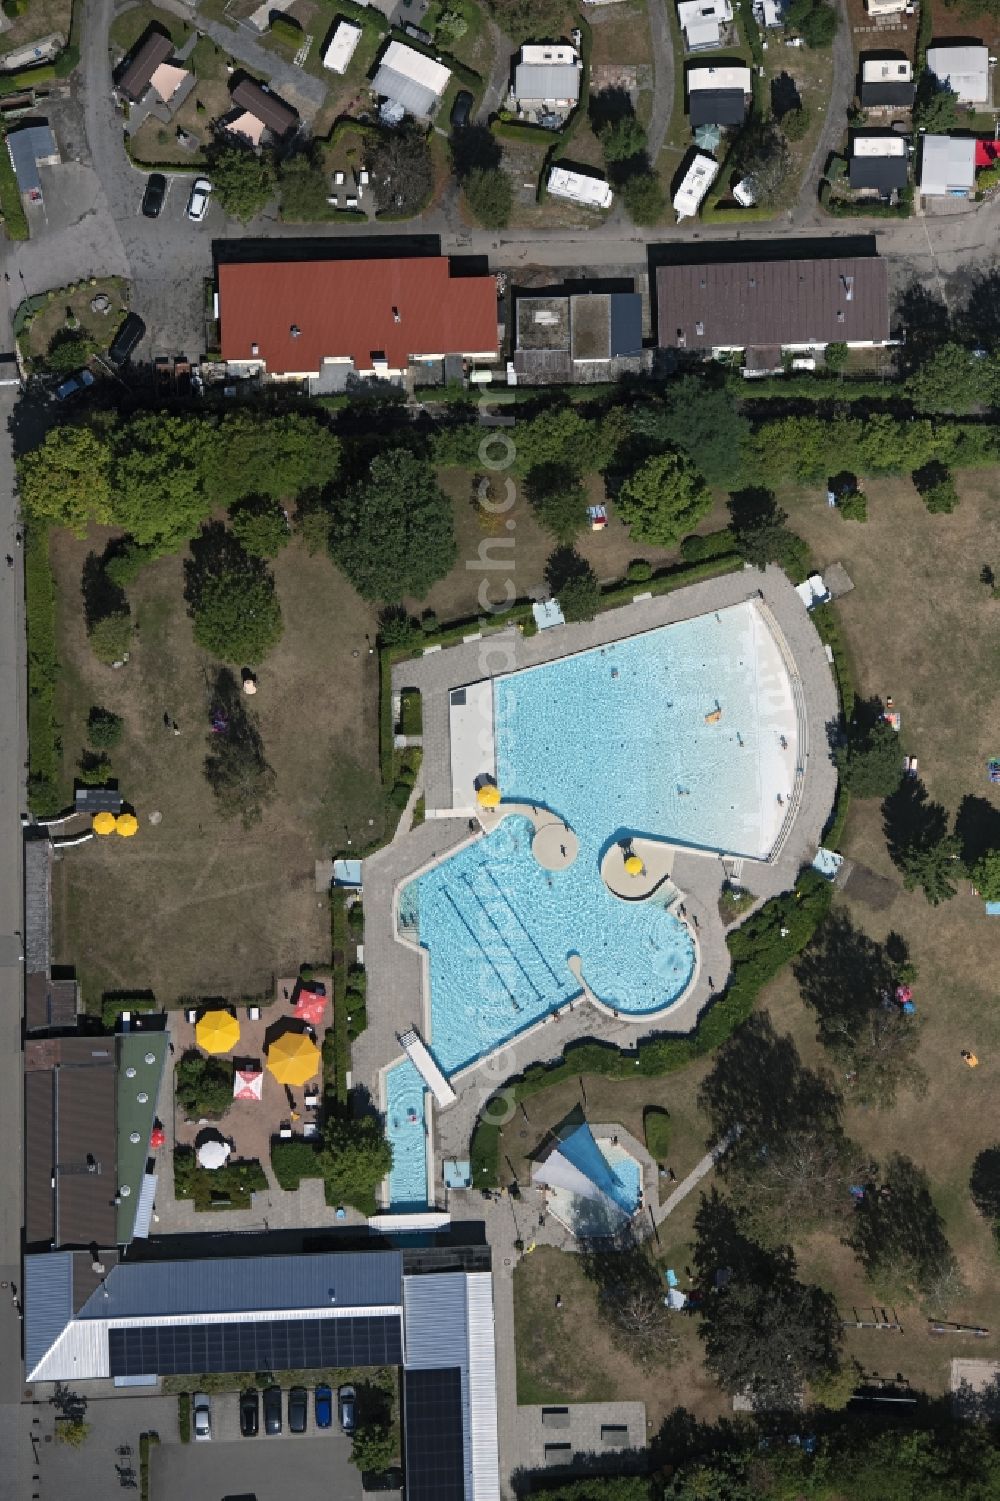 Aerial image Neuhausen - Swimming pool of the Freizeitwellenbad Schellbron in Neuhausen in the state Baden-Wuerttemberg, Germany